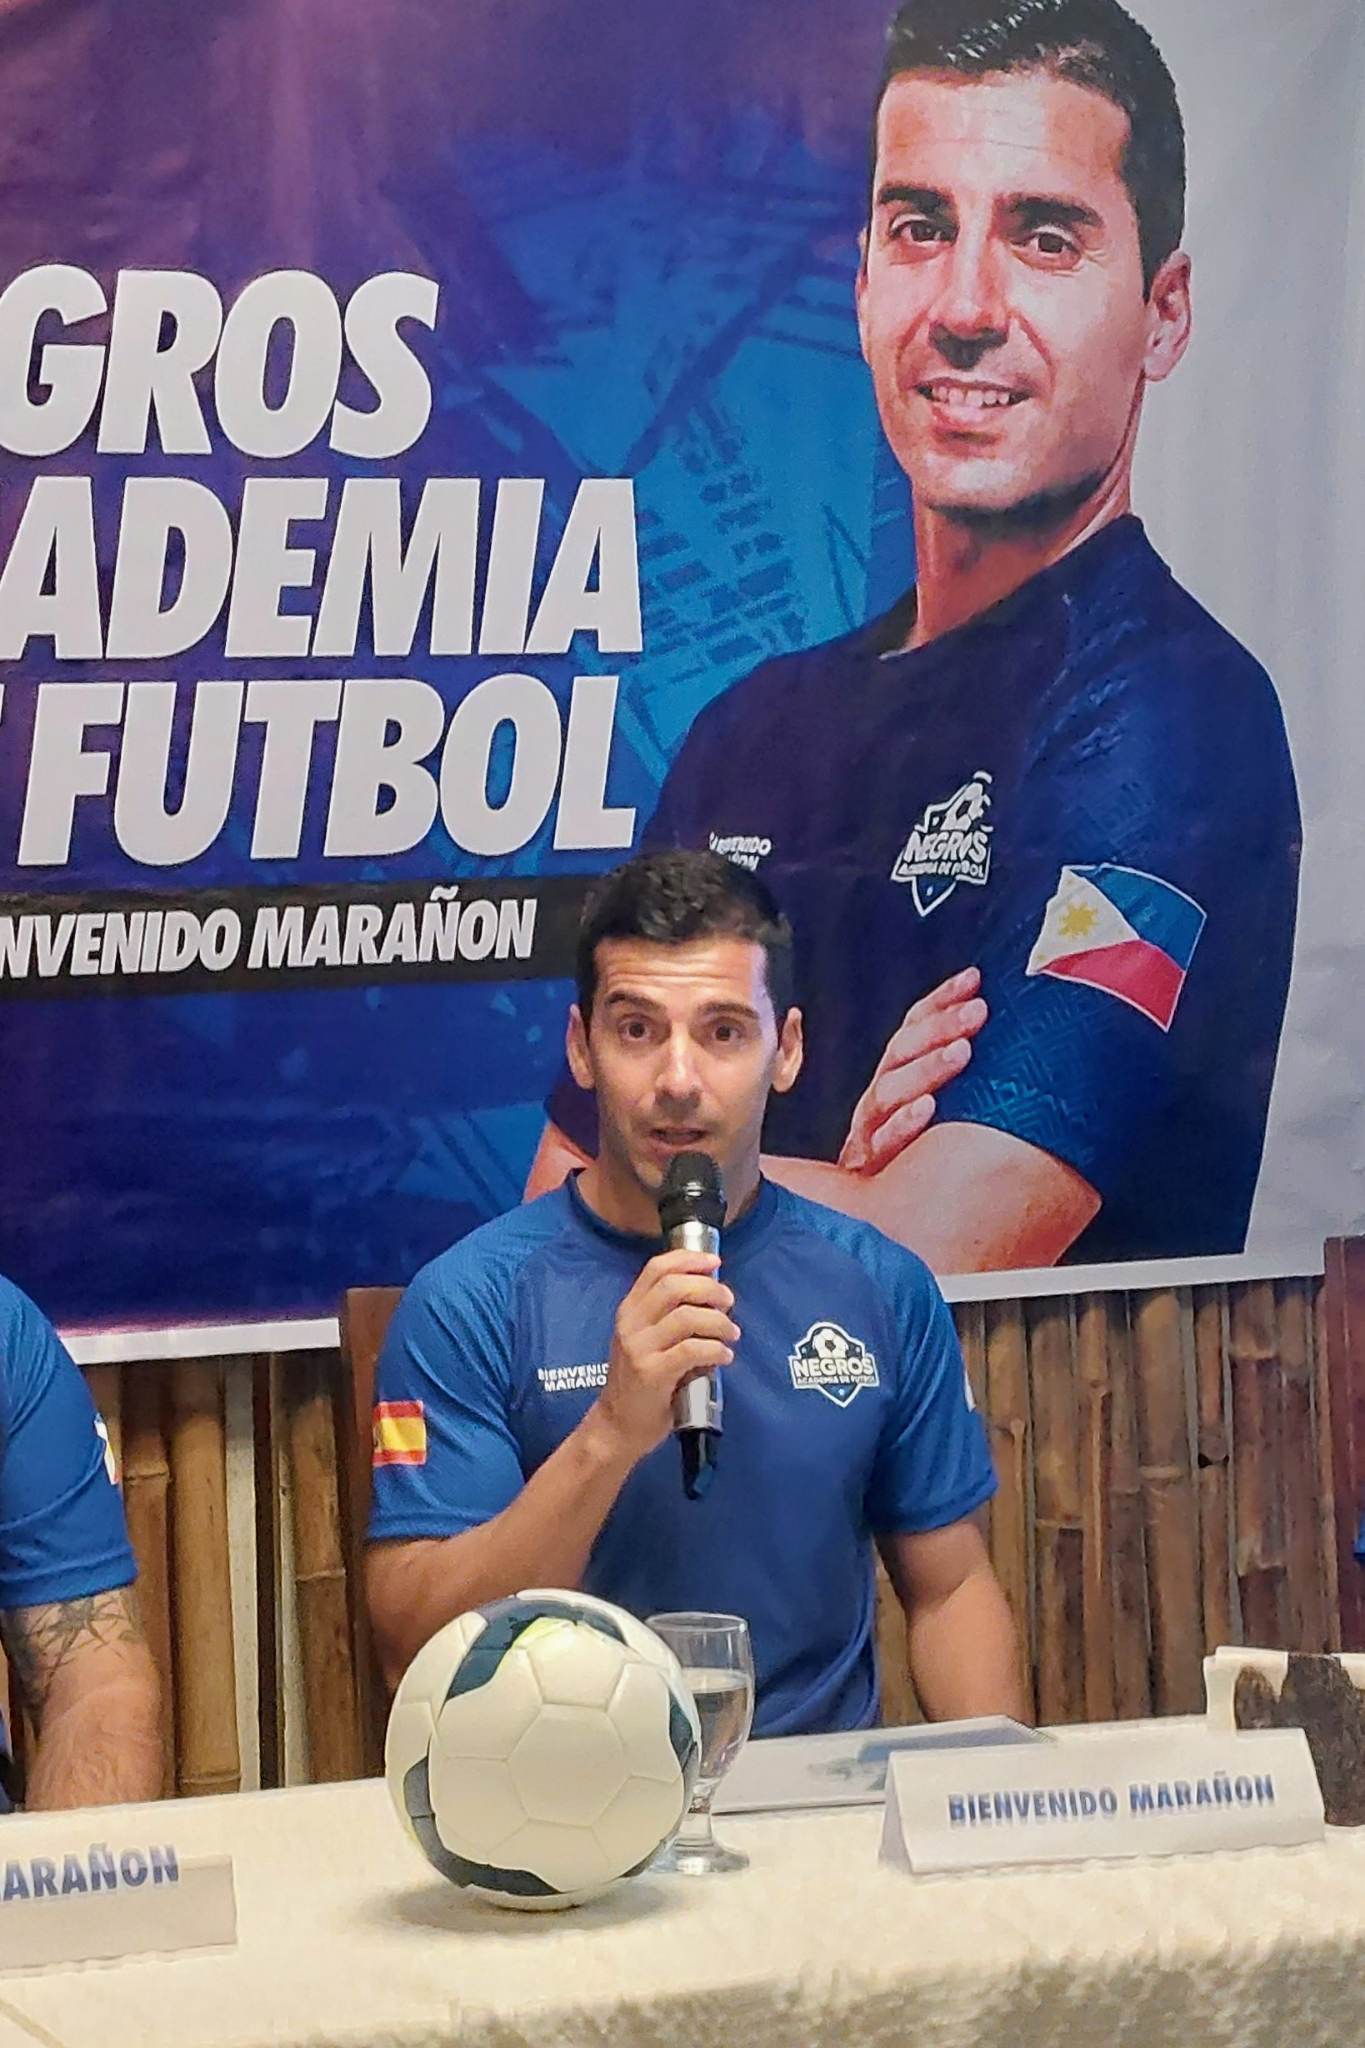 Marañon launches Negros Academia De Futbol